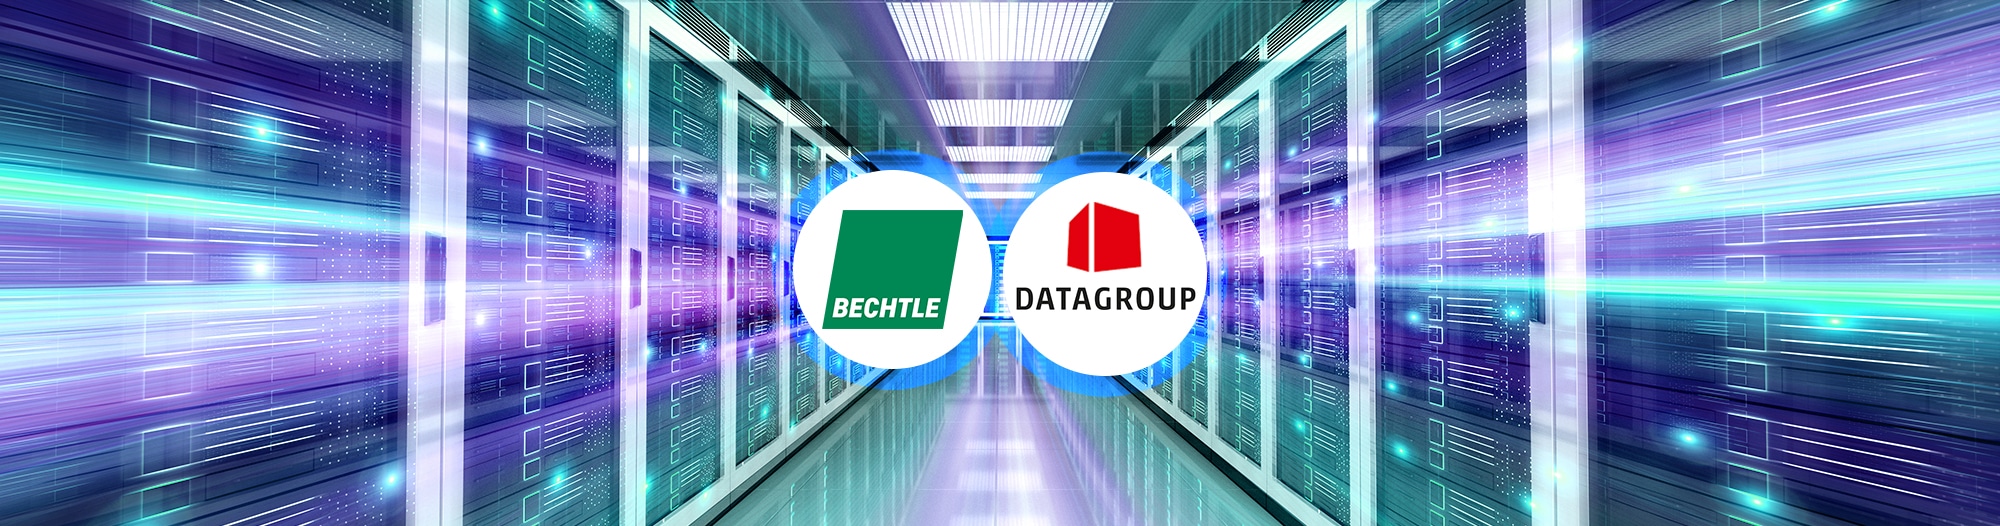 Bechtle und Datagroup - Profiteure des digitalen Megatrends Header